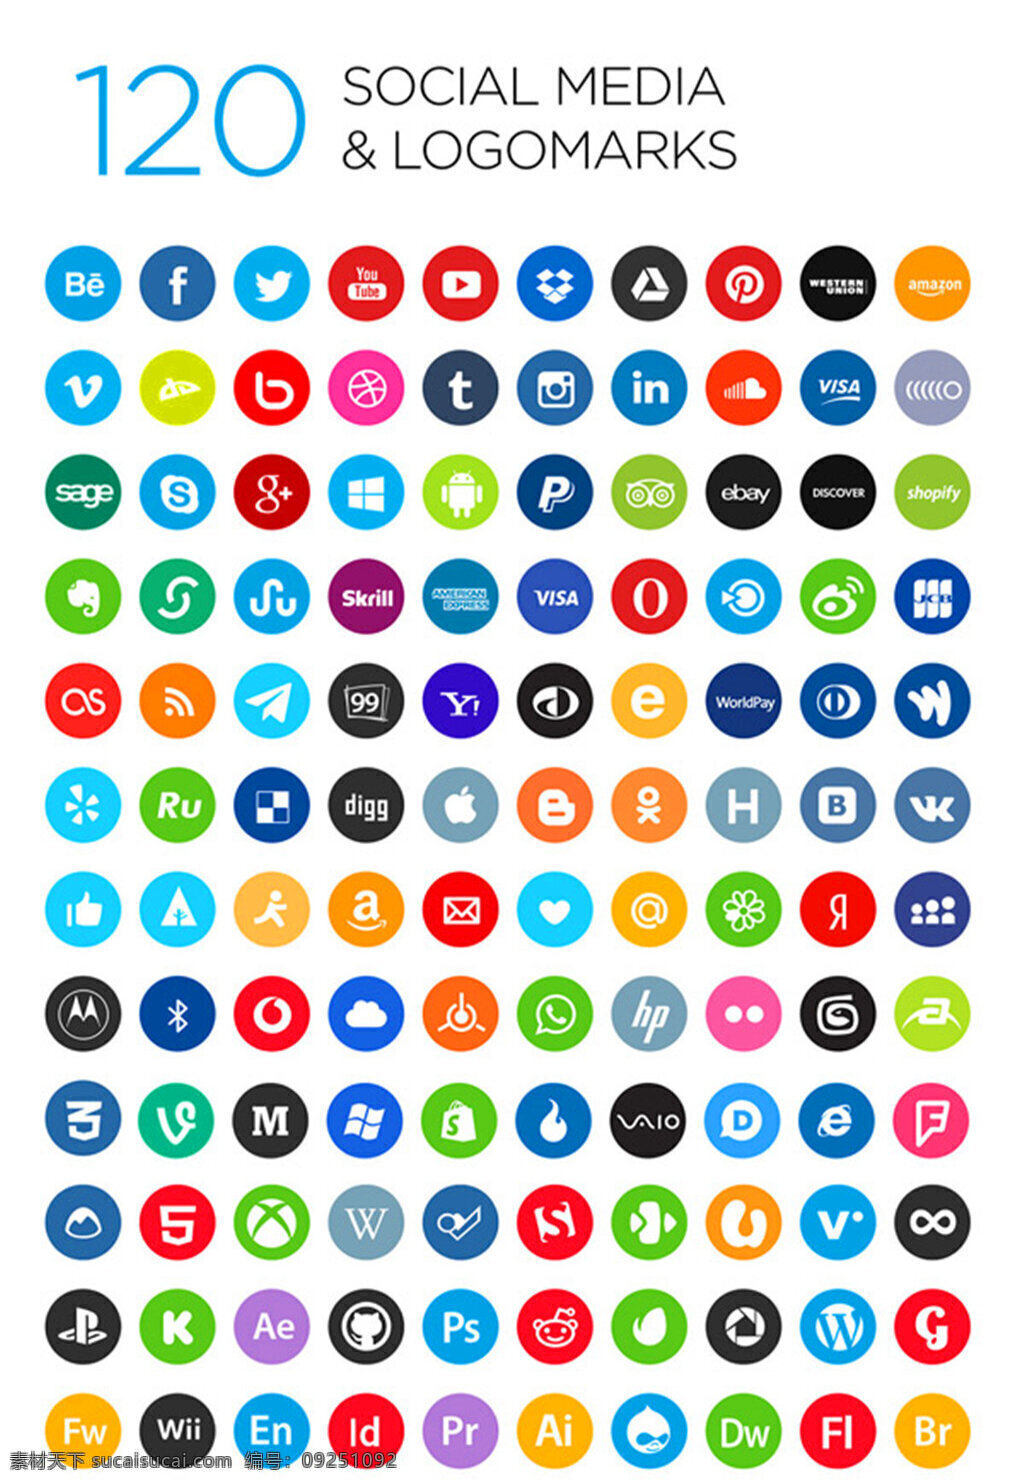 社会化 媒体 logo 矢量 元素 矢量素材 彩色icon 图标 社交平台